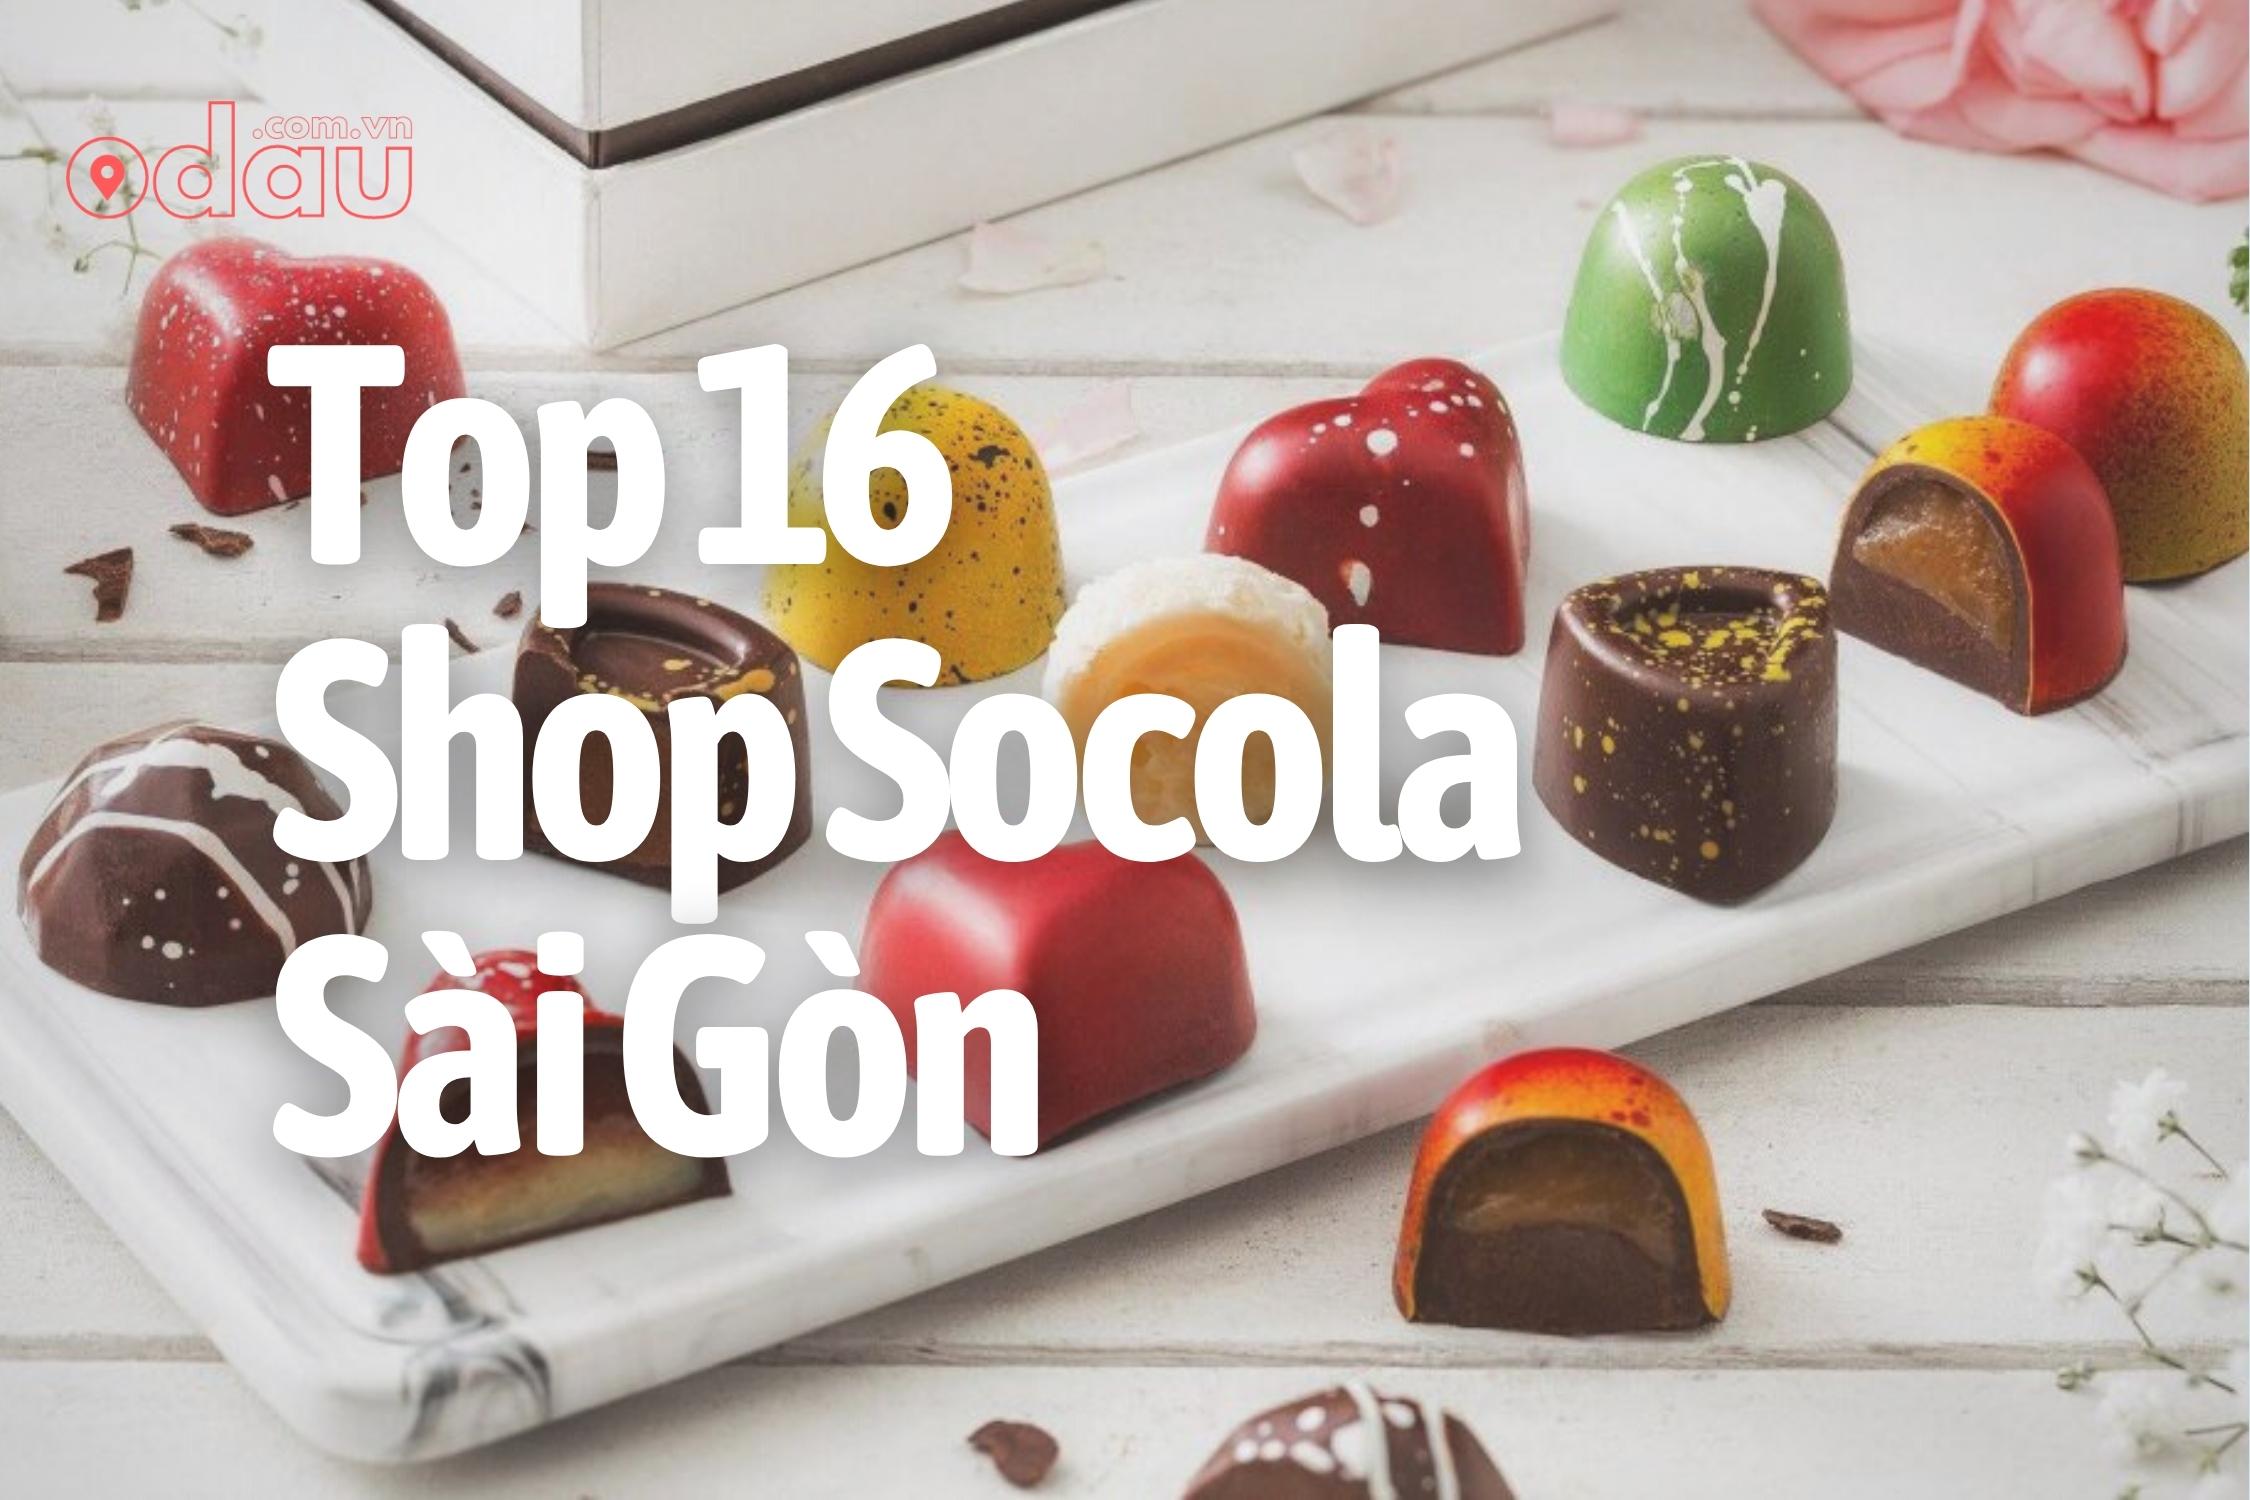 Top 16 Shop Socola Sai Gon